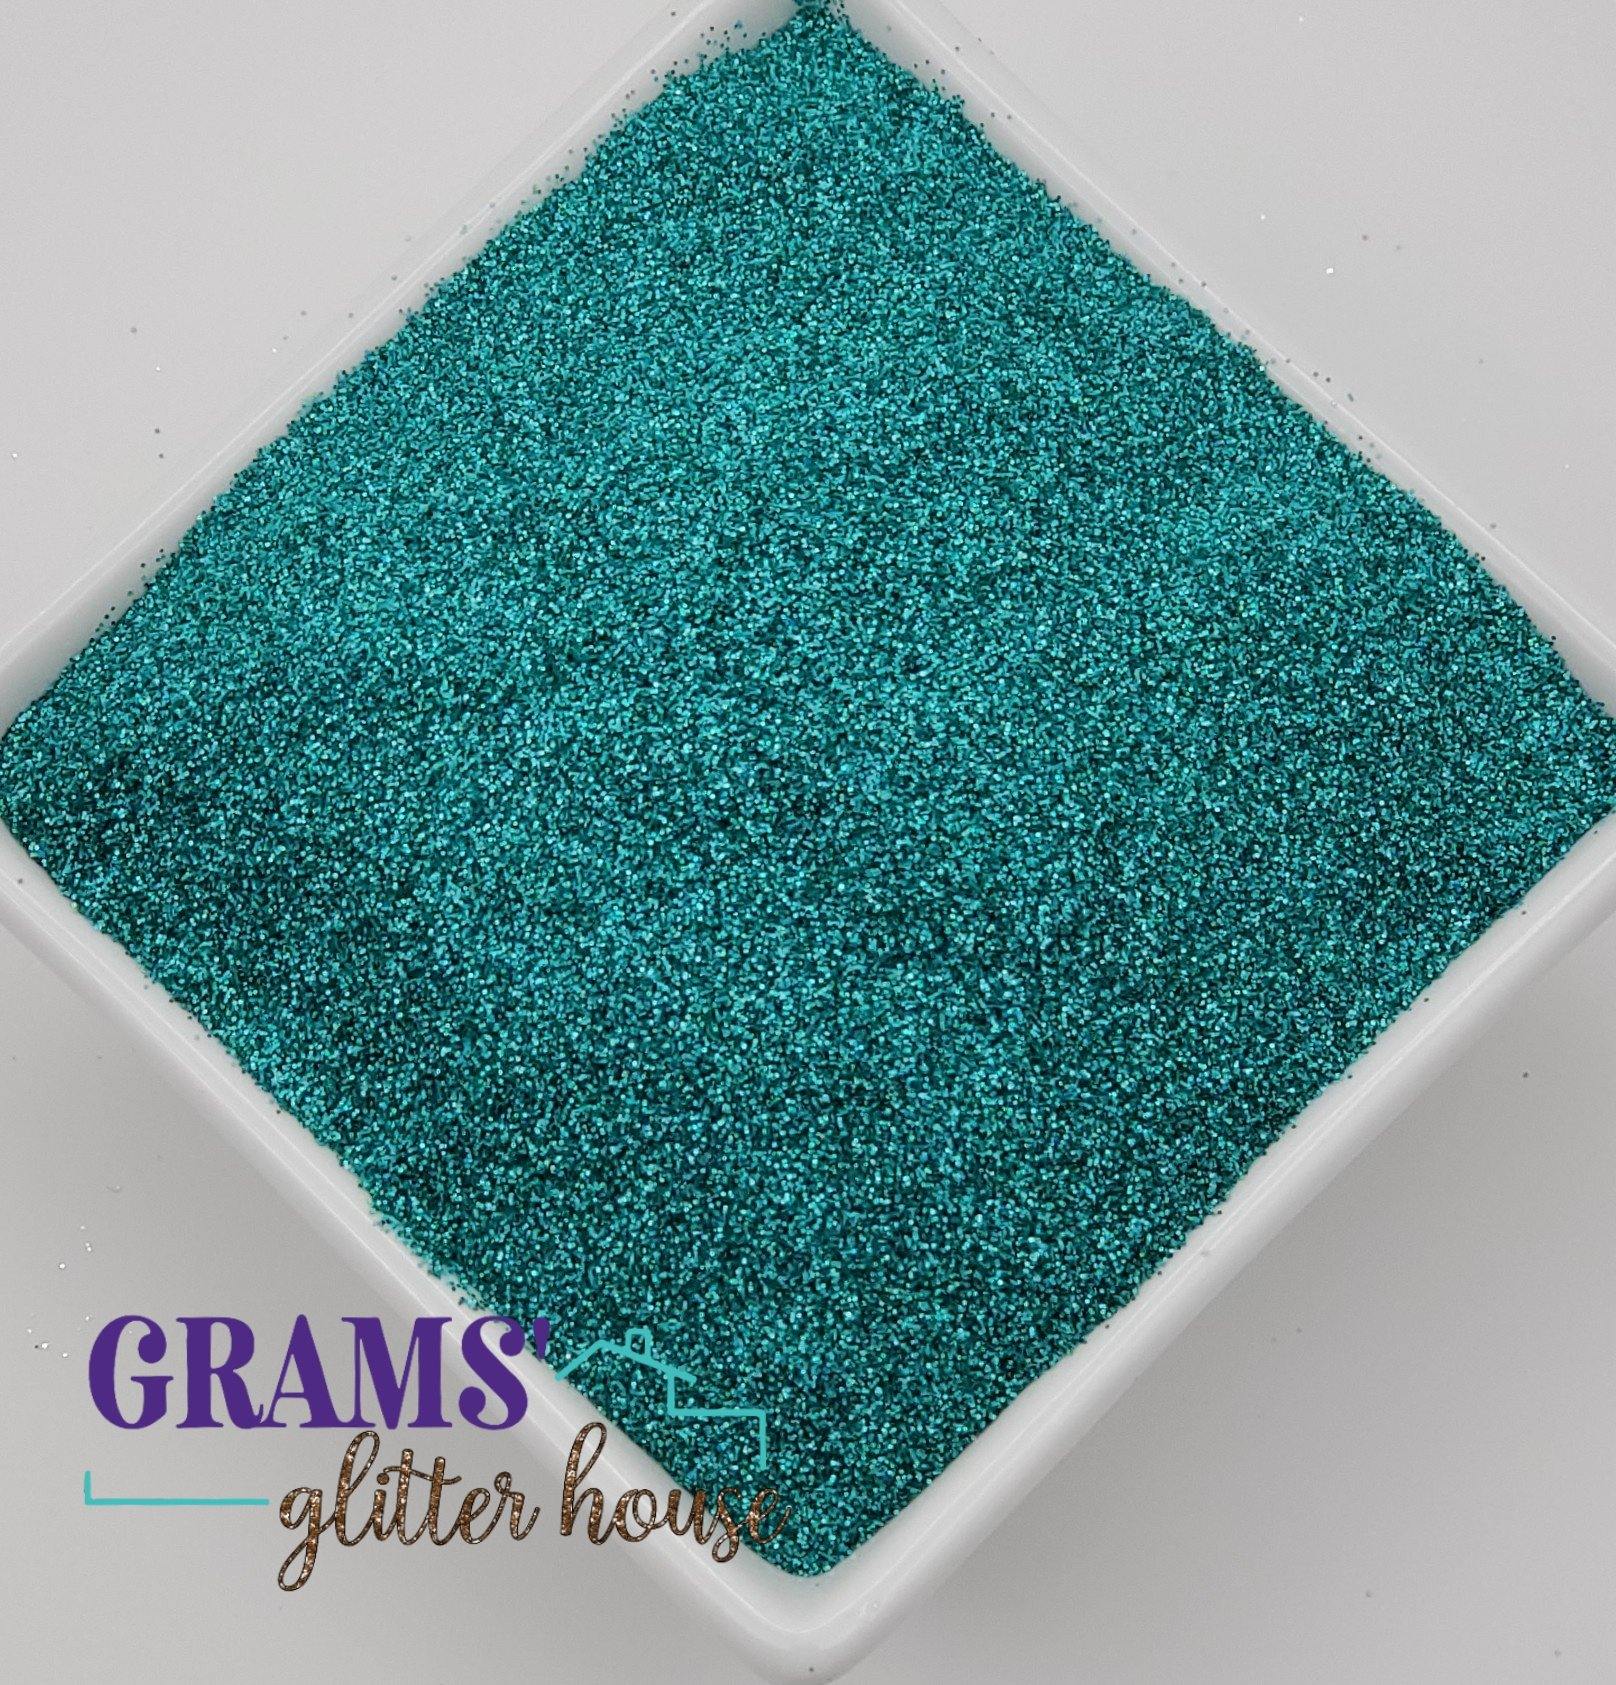 4 oz Grams' Glitter House Caribbean Turquoise Polyester Glitter